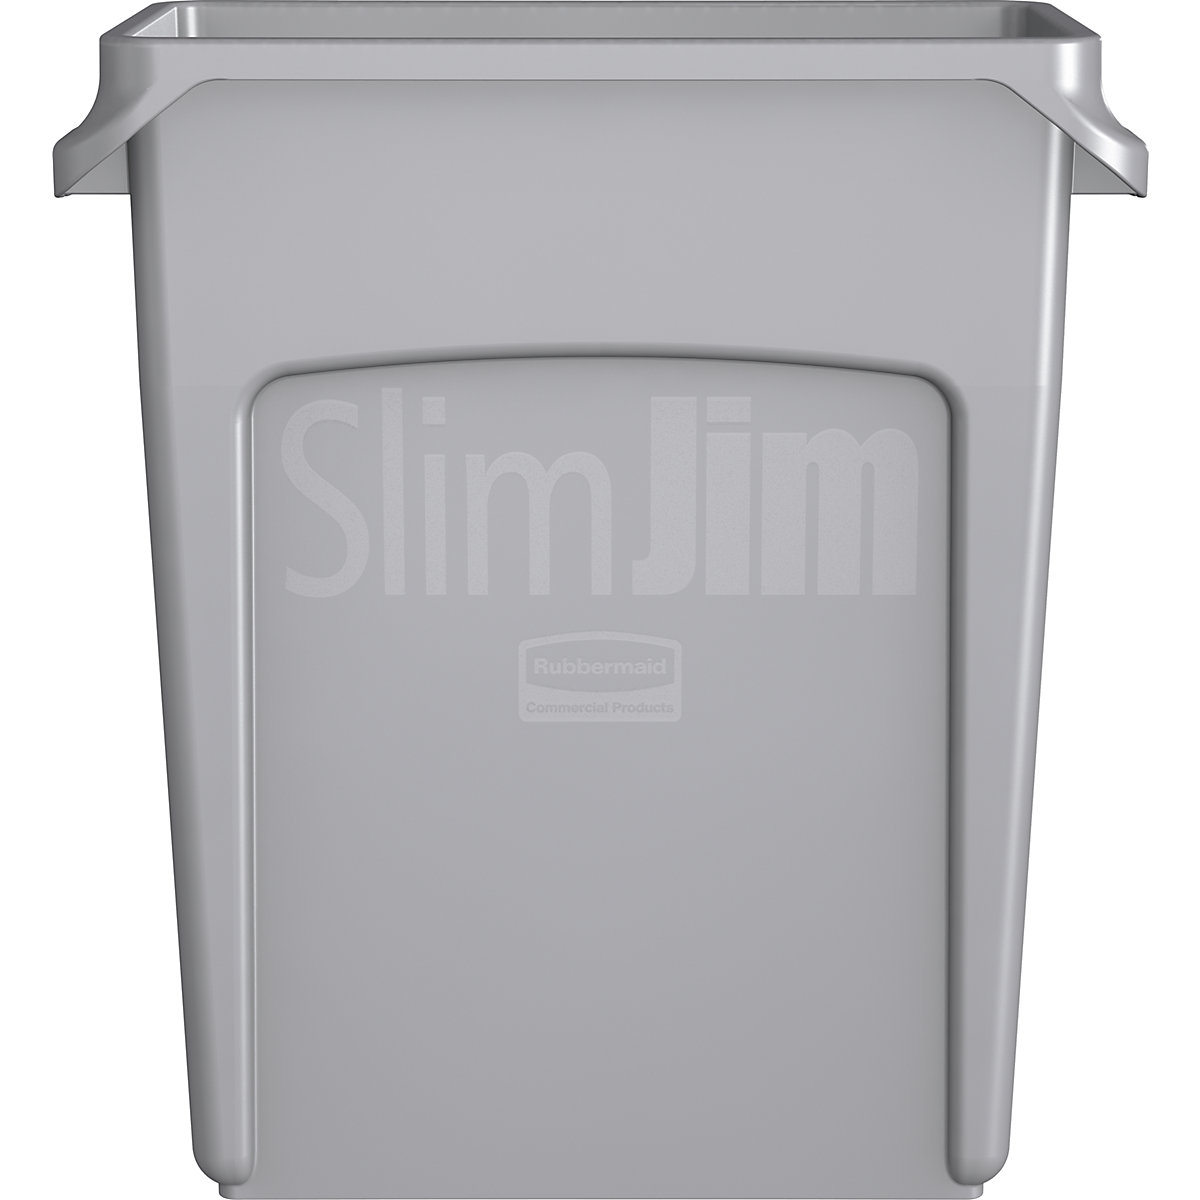 Recipiente para separar materiales/cubo de basura SLIM JIM® – Rubbermaid (Imagen del producto 3)-2